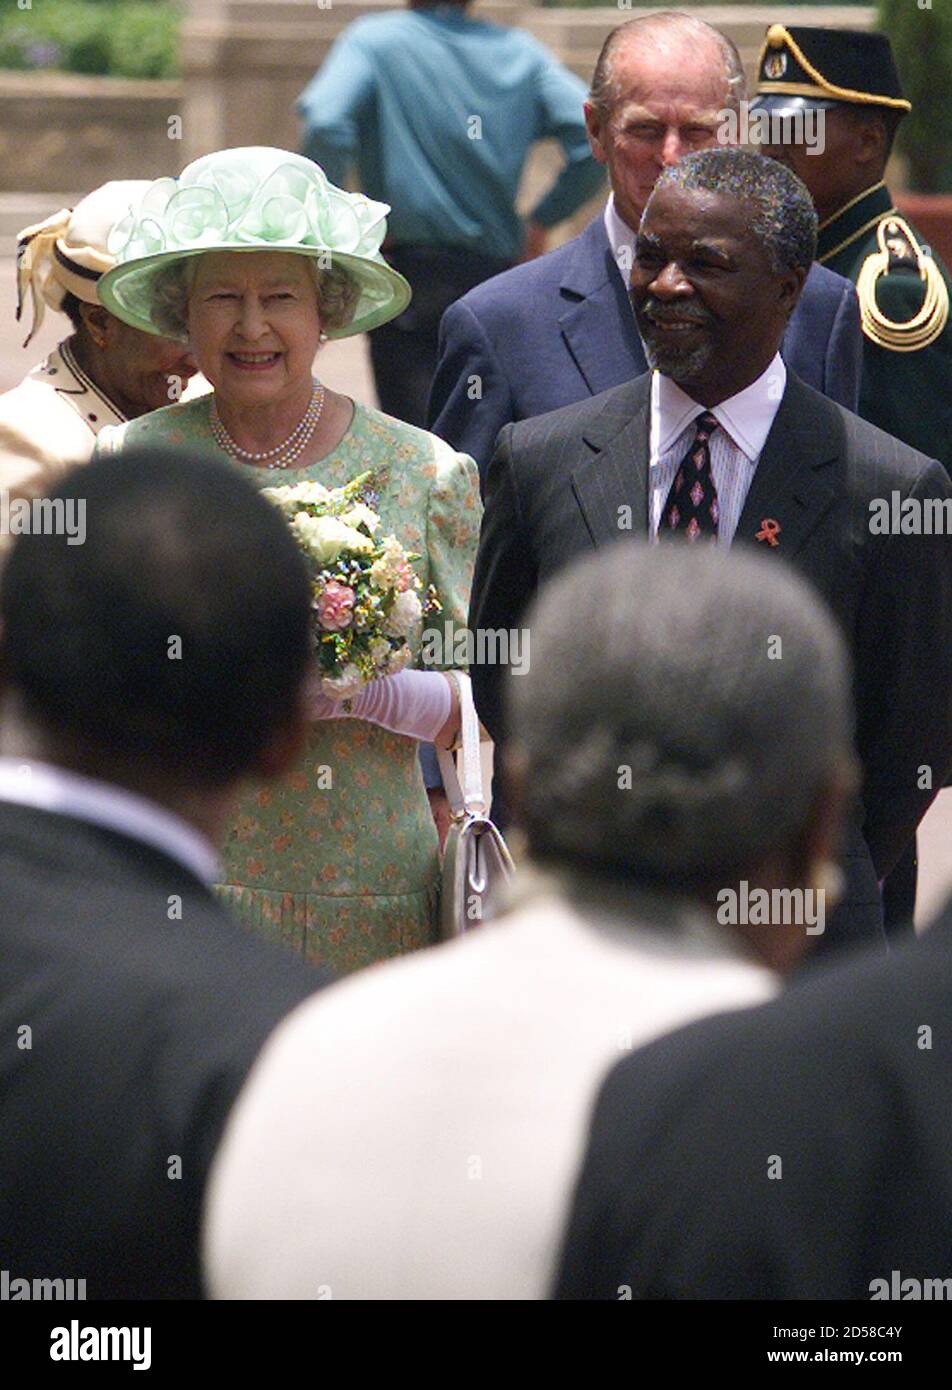 Der südafrikanische Präsident Thabo Mbeki begrüßt die britische Königin Elizabeth zu Beginn ihres Staatsbesuchs am 10. November in Südafrika. Es wird erwartet, dass Königin Elizabeth Großbritanniens Bedauern über den Anglo-Boer-Krieg zum Ausdruck bringt, in dem sie den Transvaal und den Orange Free State von den Boer-Siedlern eroberte. Hinter dem Monarchen und Präsidenten Mbeki steht ihr Ehemann Prinz Philip (R) und die südafrikanische First Lady Zanele Mbeki. JN/FMS Stockfoto